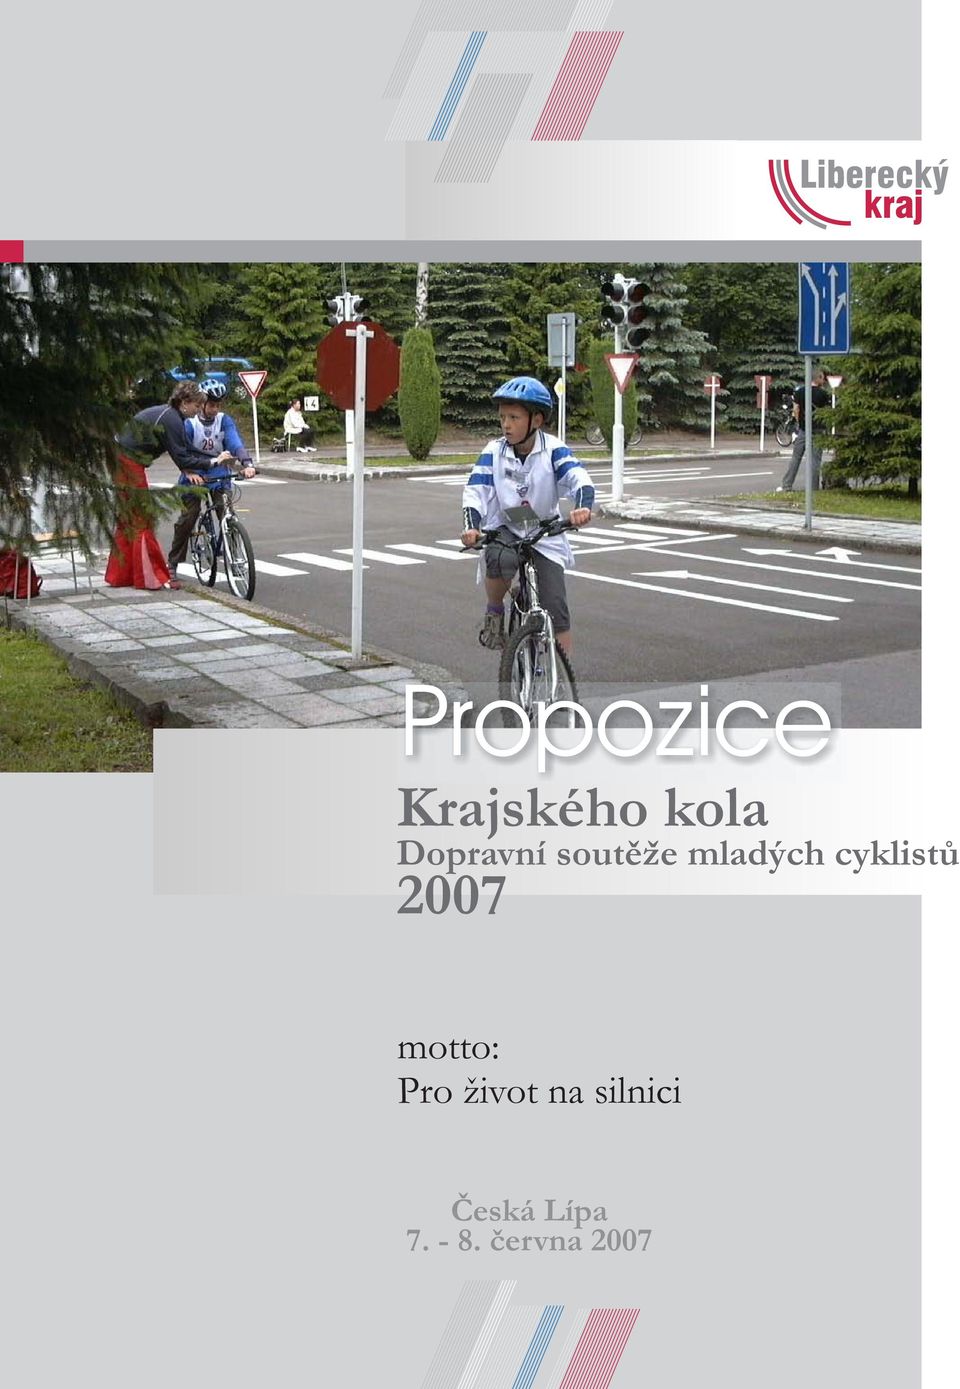 cyklistù 2007 motto: Pro život